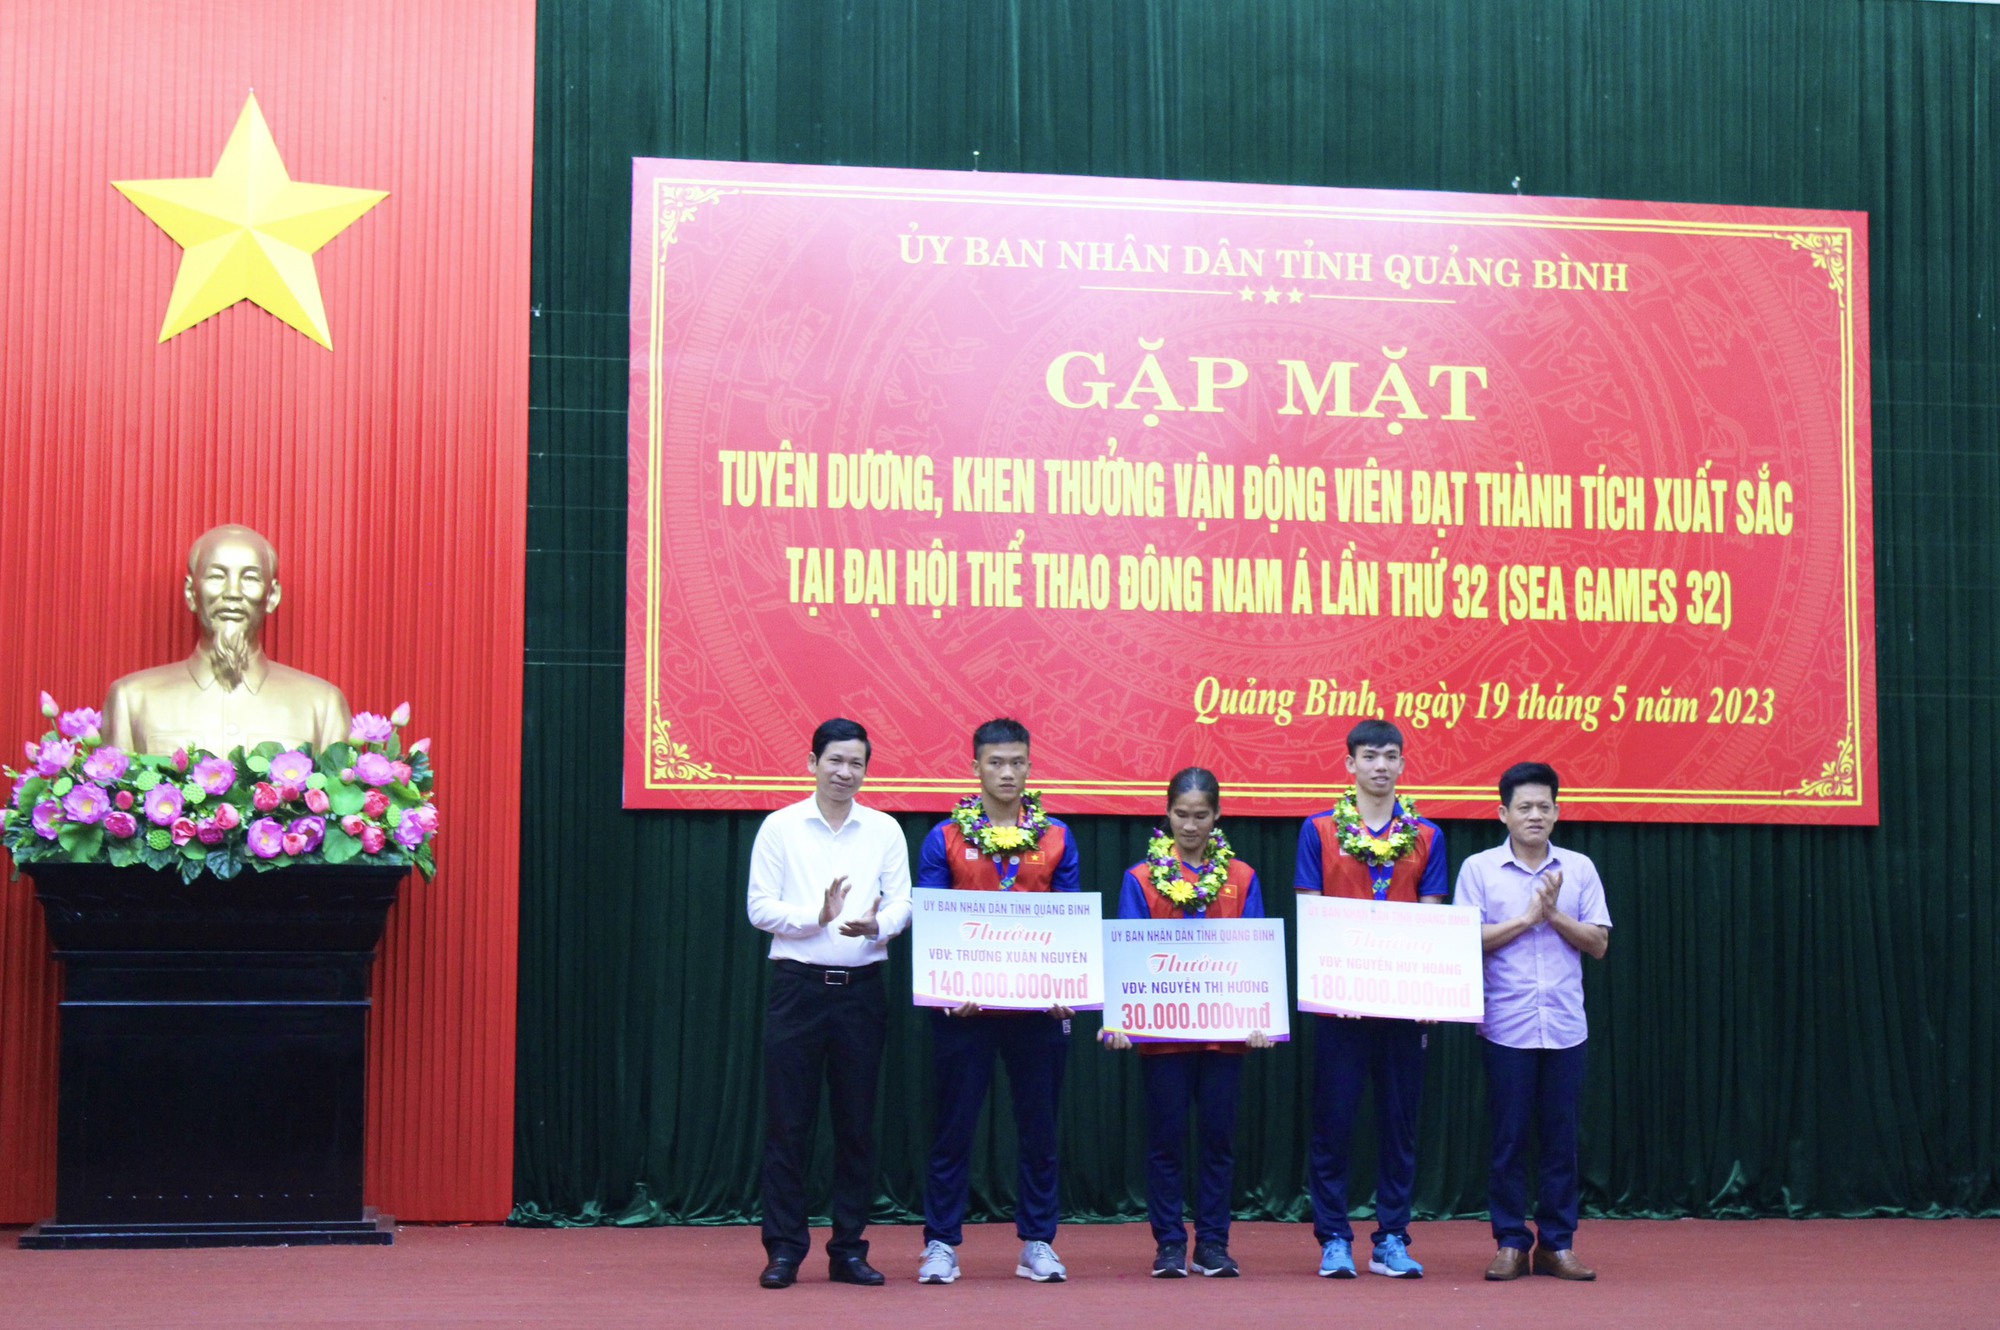 &quot;Kình ngư&quot; Nguyễn Huy Hoàng cùng 2 vận động viên nhân thưởng lớn từ tỉnh Quảng Bình - Ảnh 1.